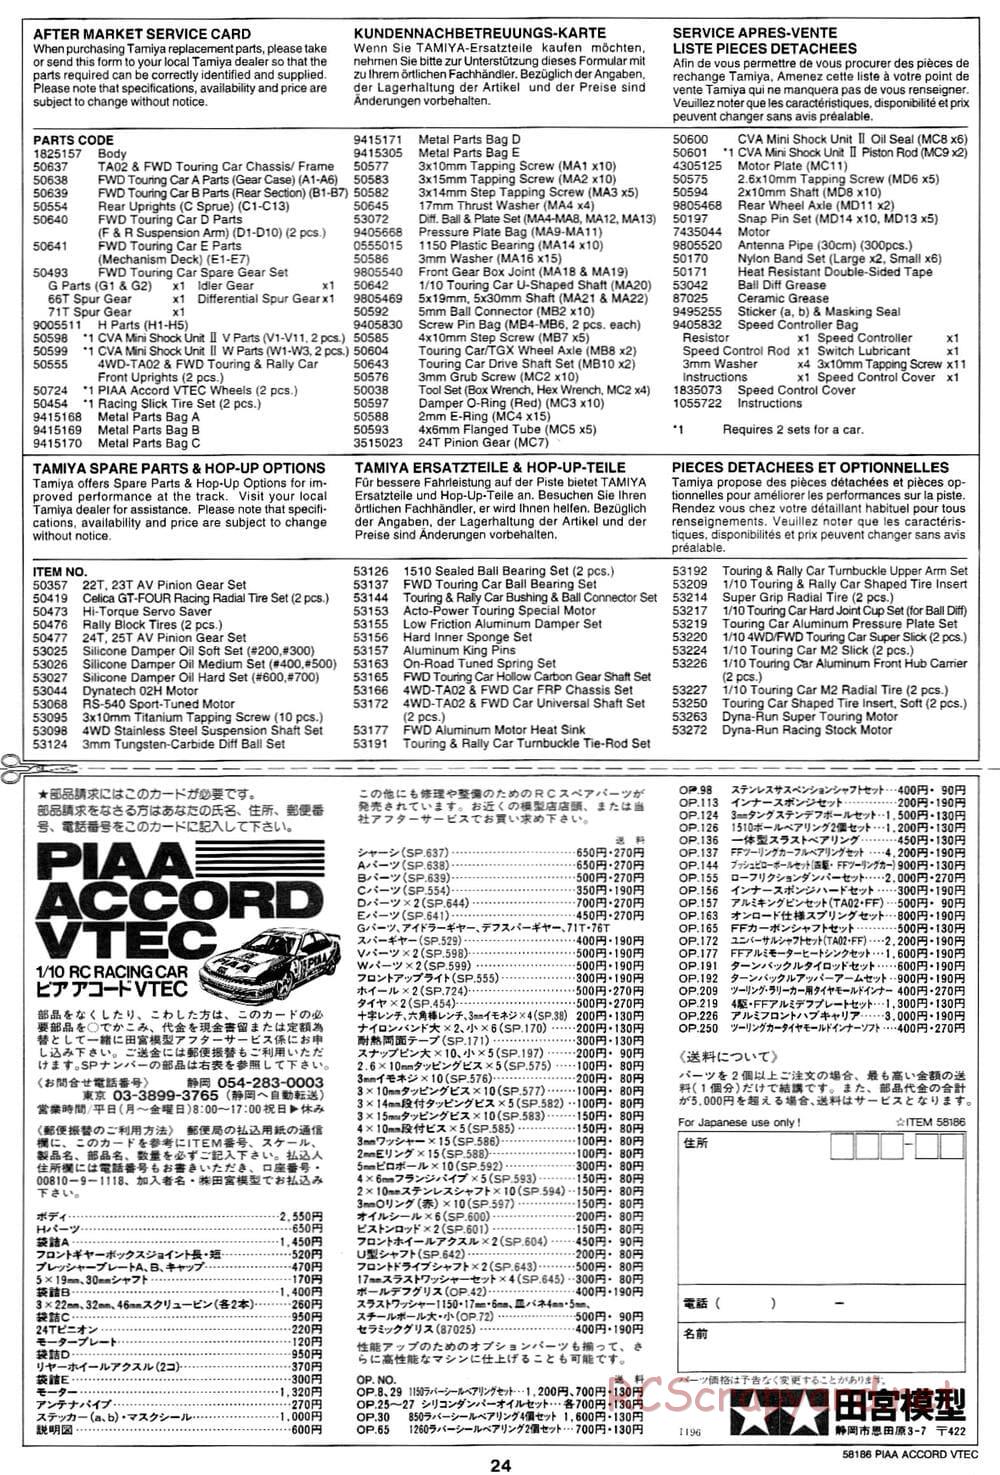 Tamiya - PIAA Accord VTEC - FF-01 Chassis - Manual - Page 24